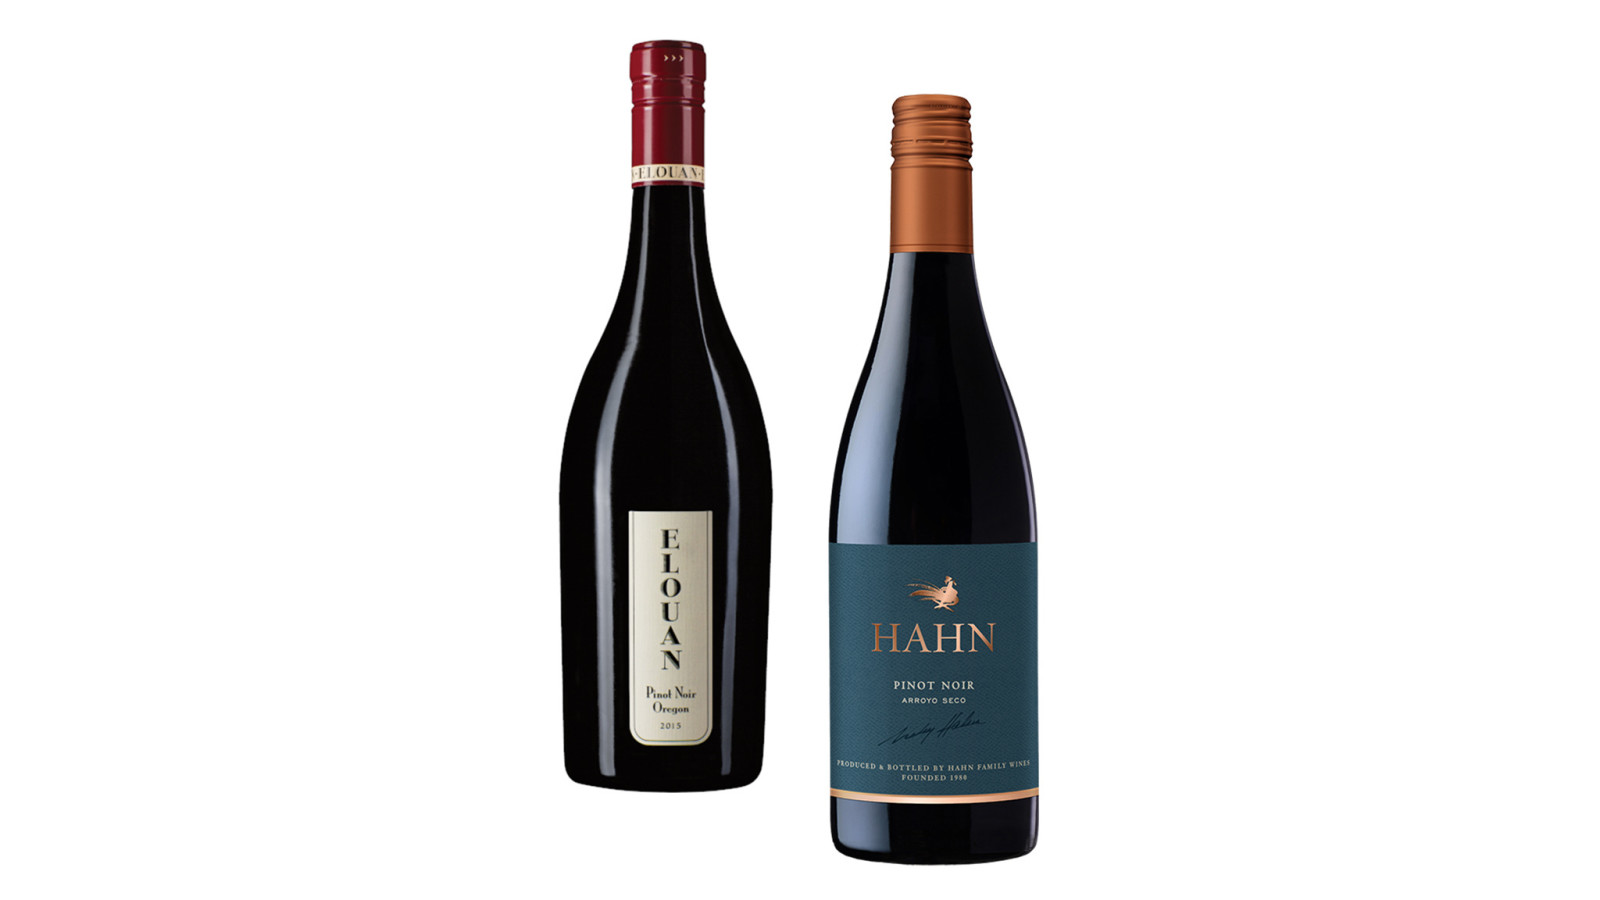 Elouan Pinot Noir & Hahn Arroyo Seco Pinot Noir